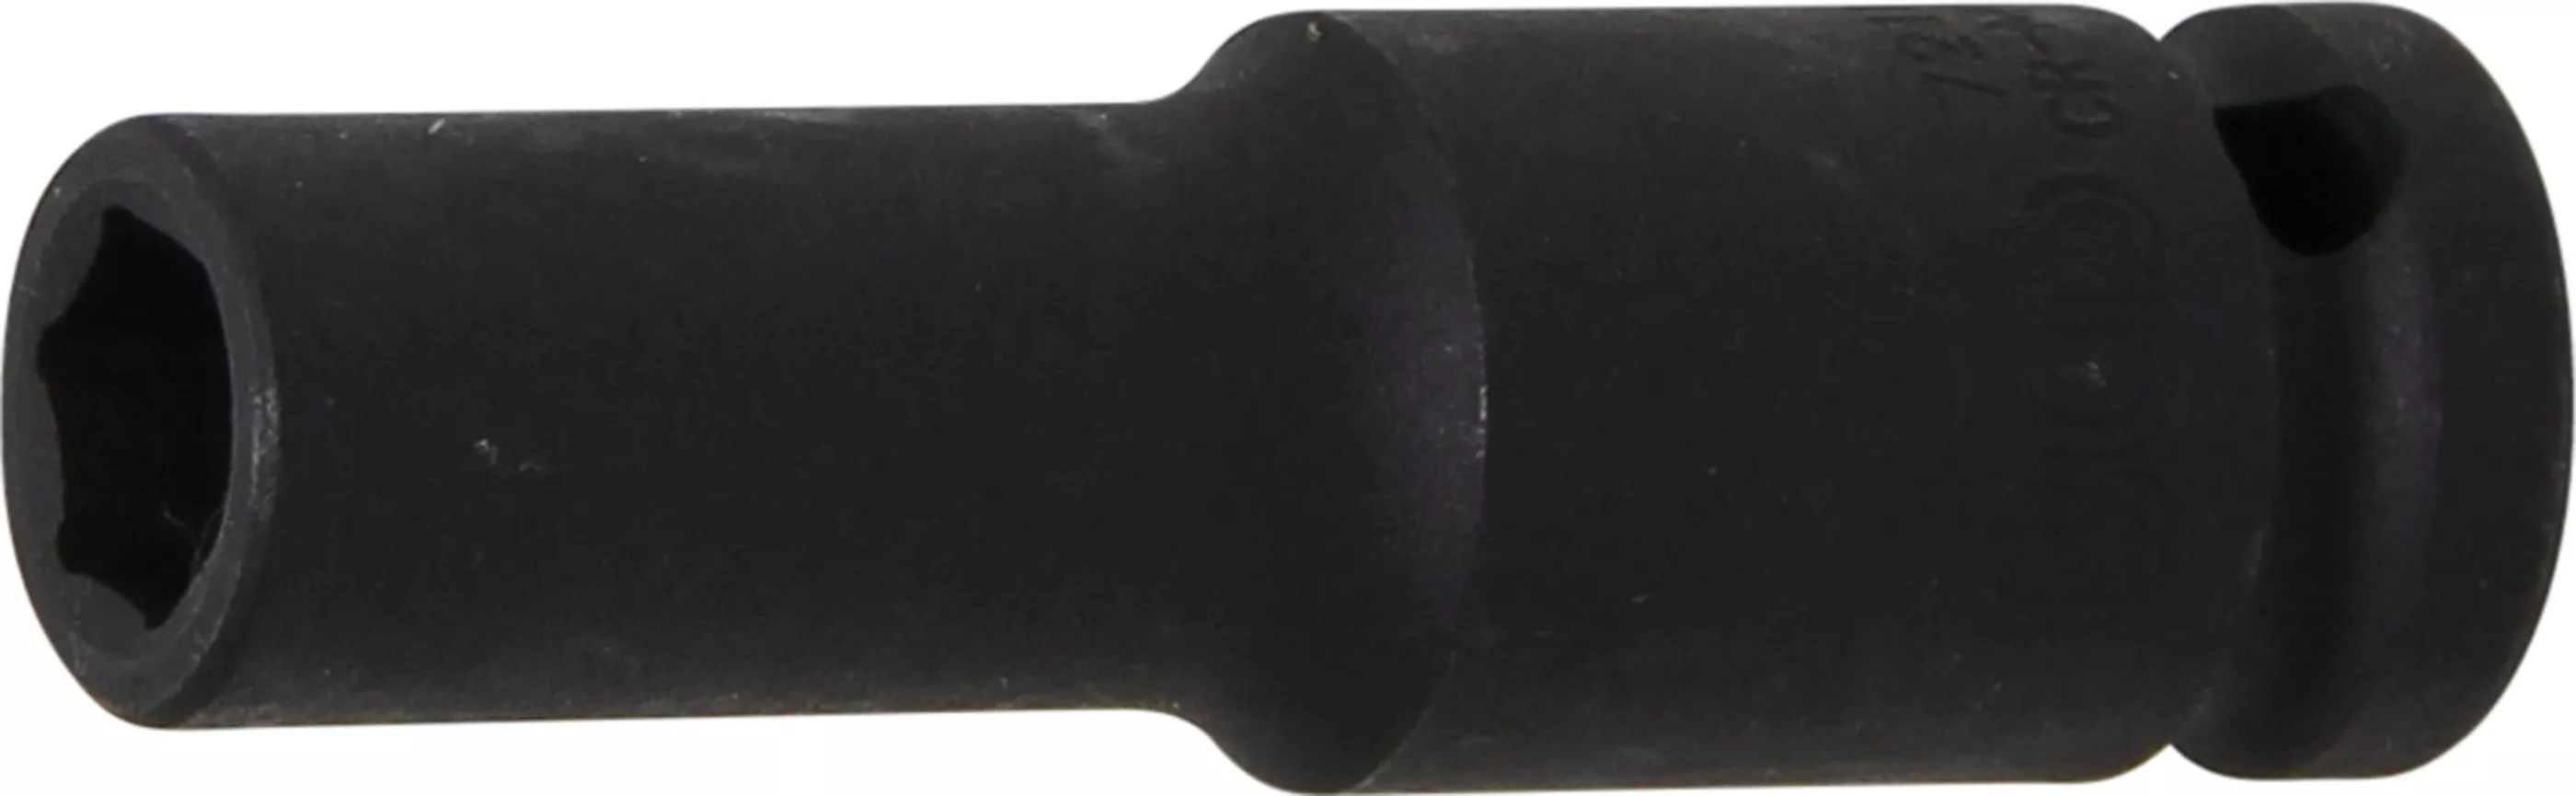 Rázový nástrčný klíč, šestihranný, 1/2", 11 mm - B7211